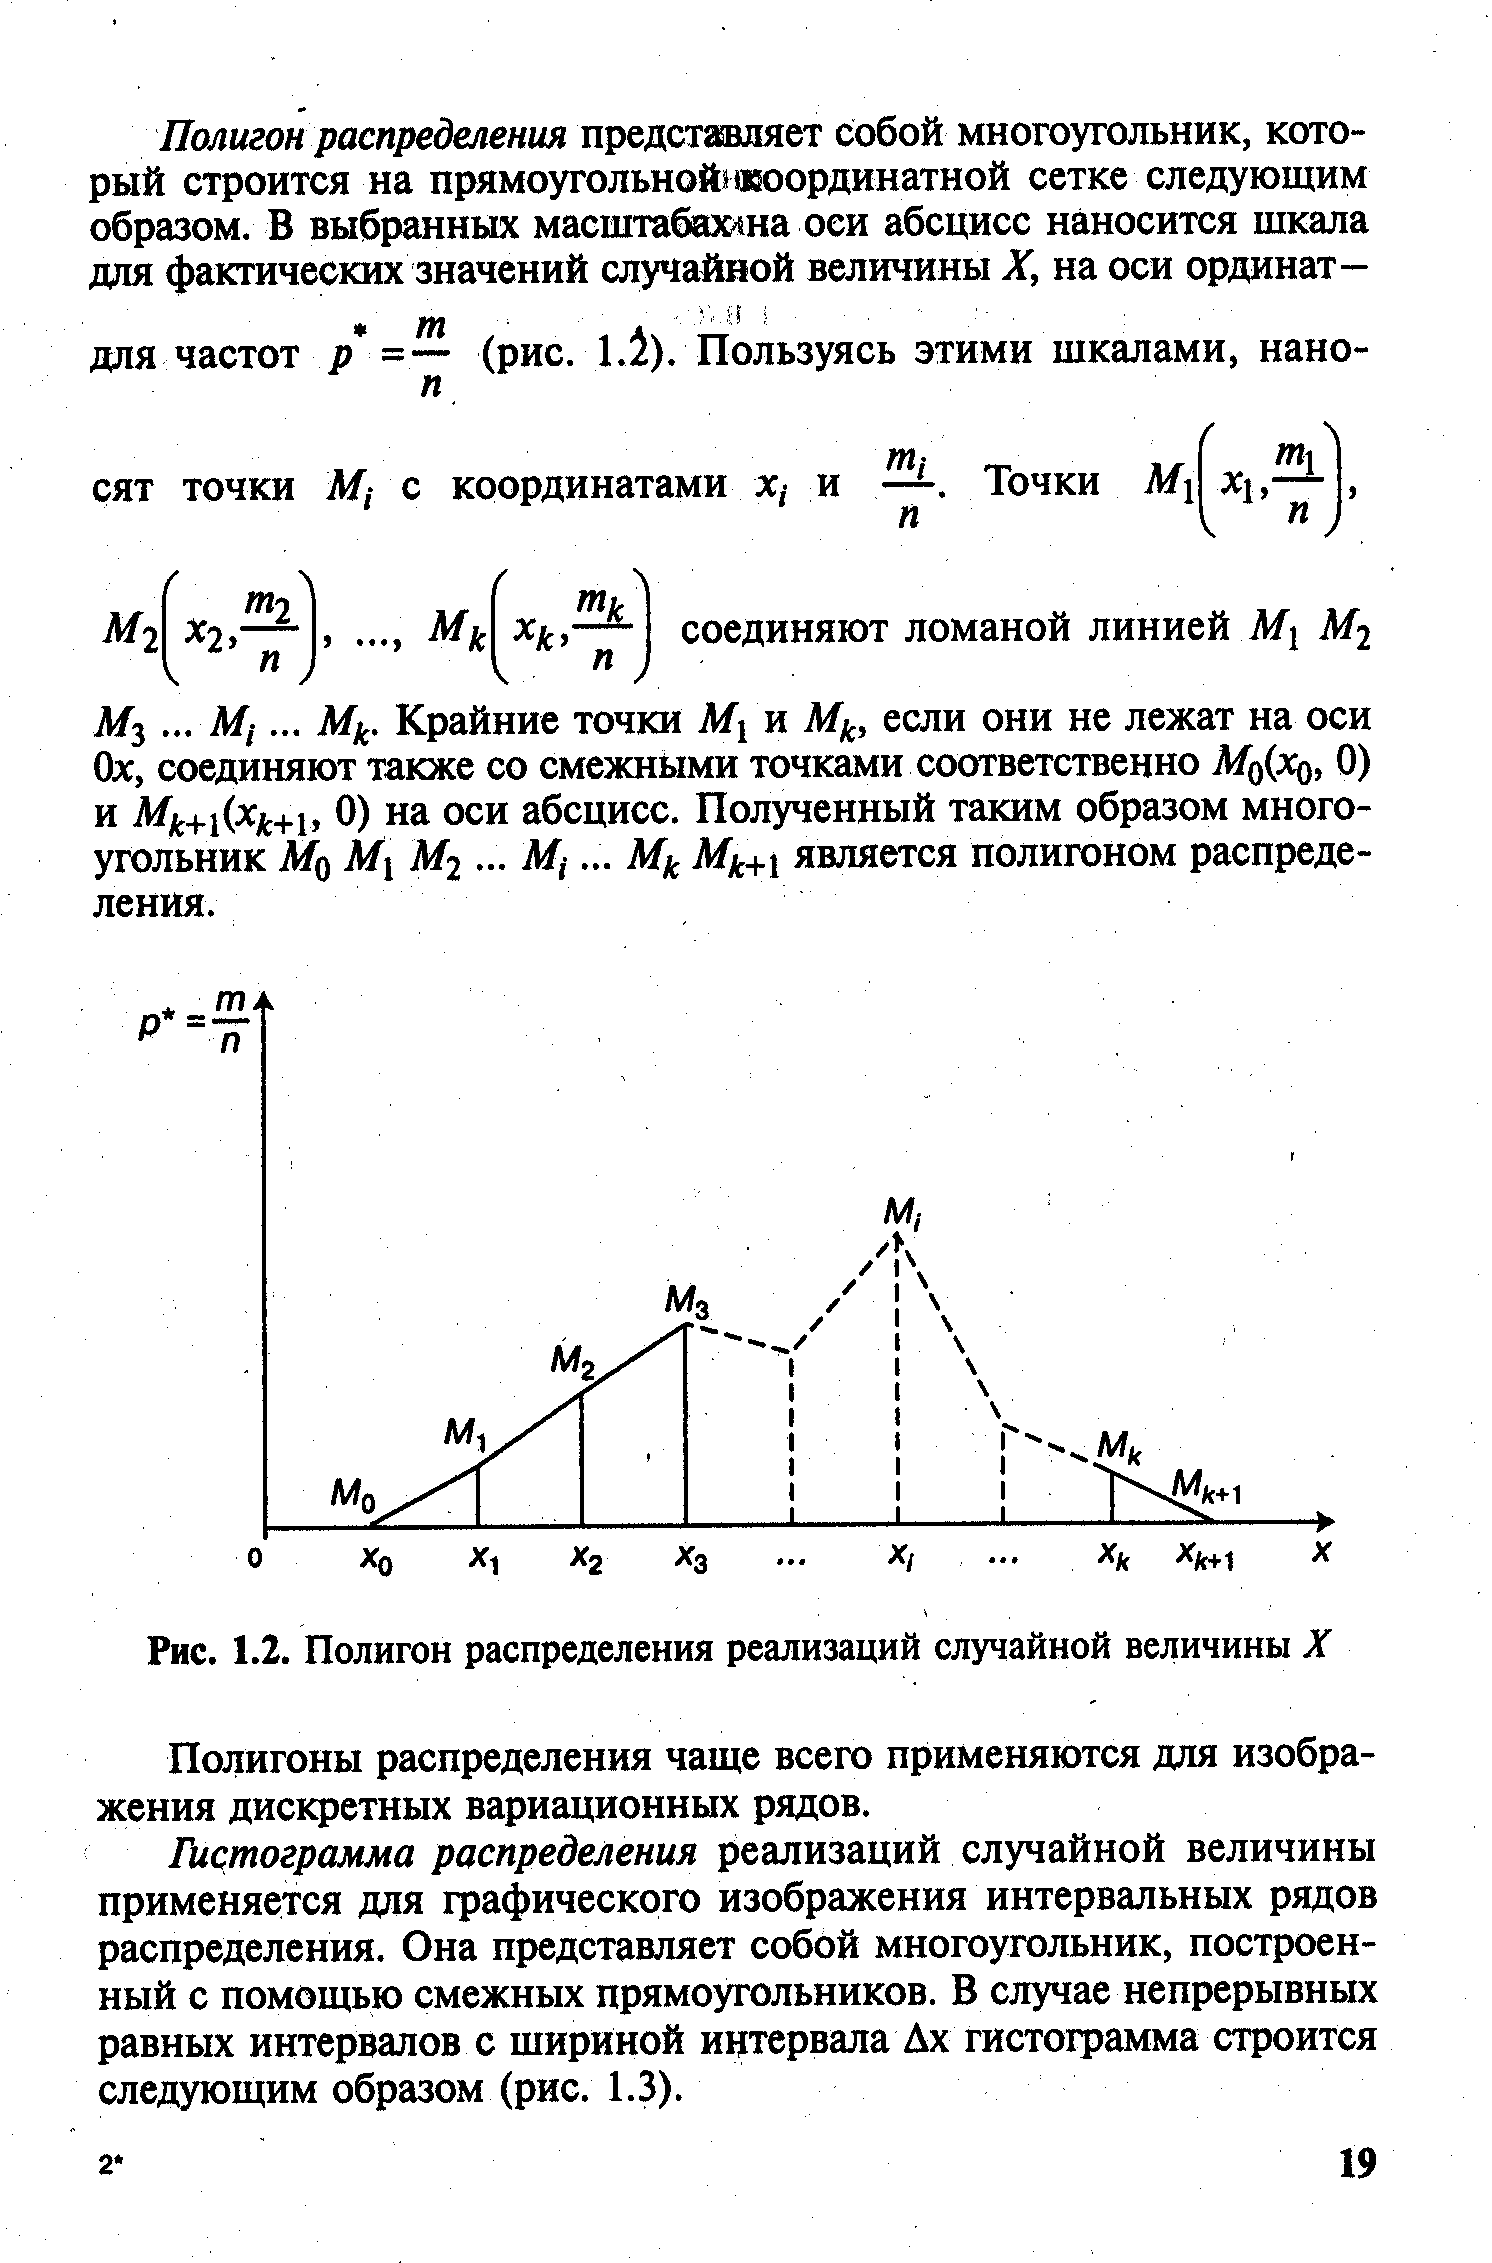 Рис. 1.2. Полигон распределения реализаций случайной величины X
